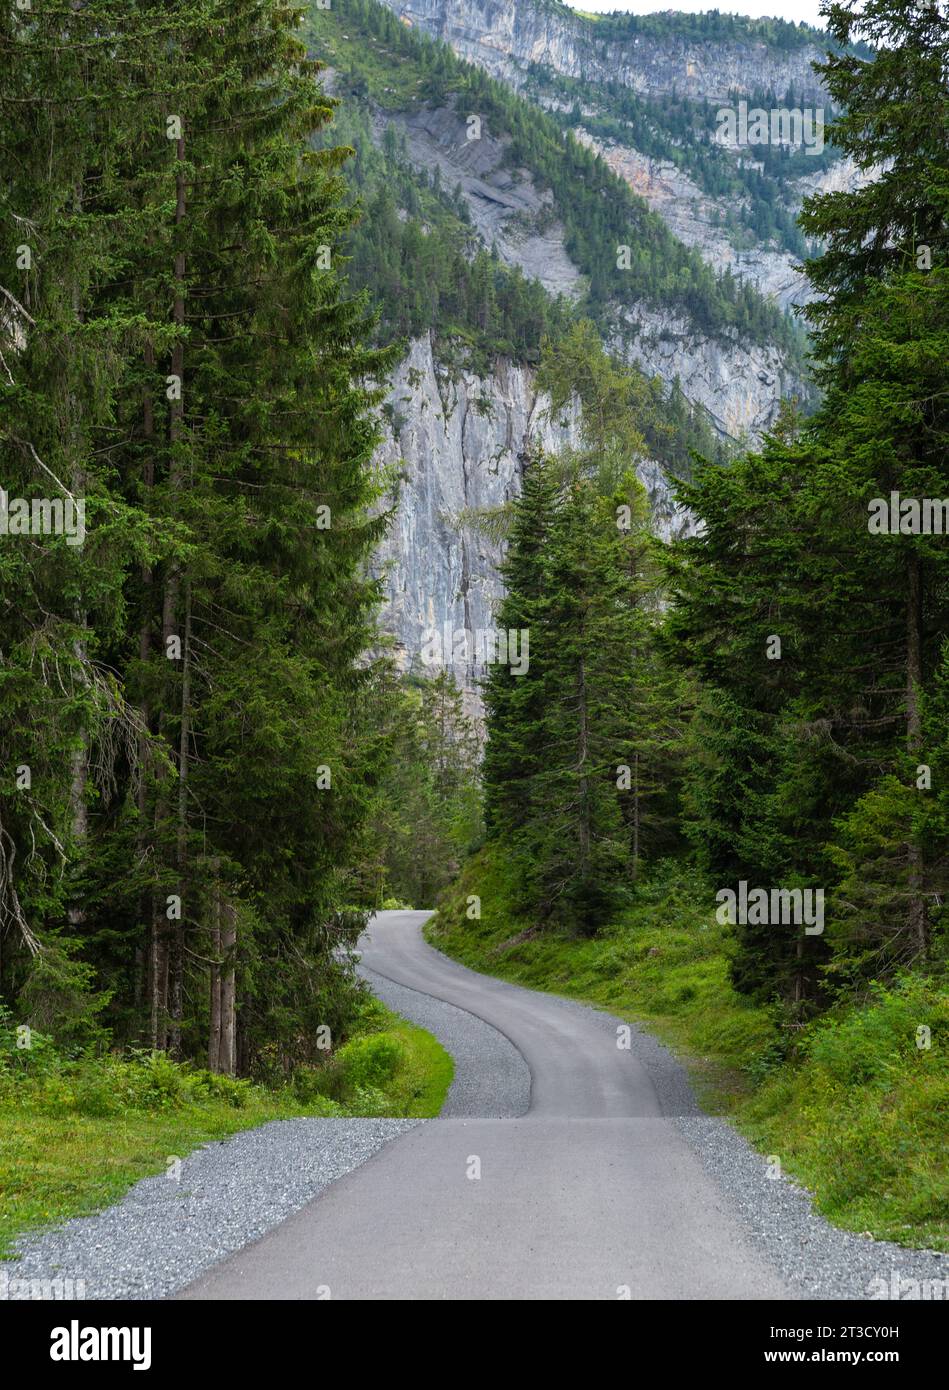 Une route courbe dans la forêt de montagne des Alpes, Kandersteg, Suisse, concept de succès Banque D'Images